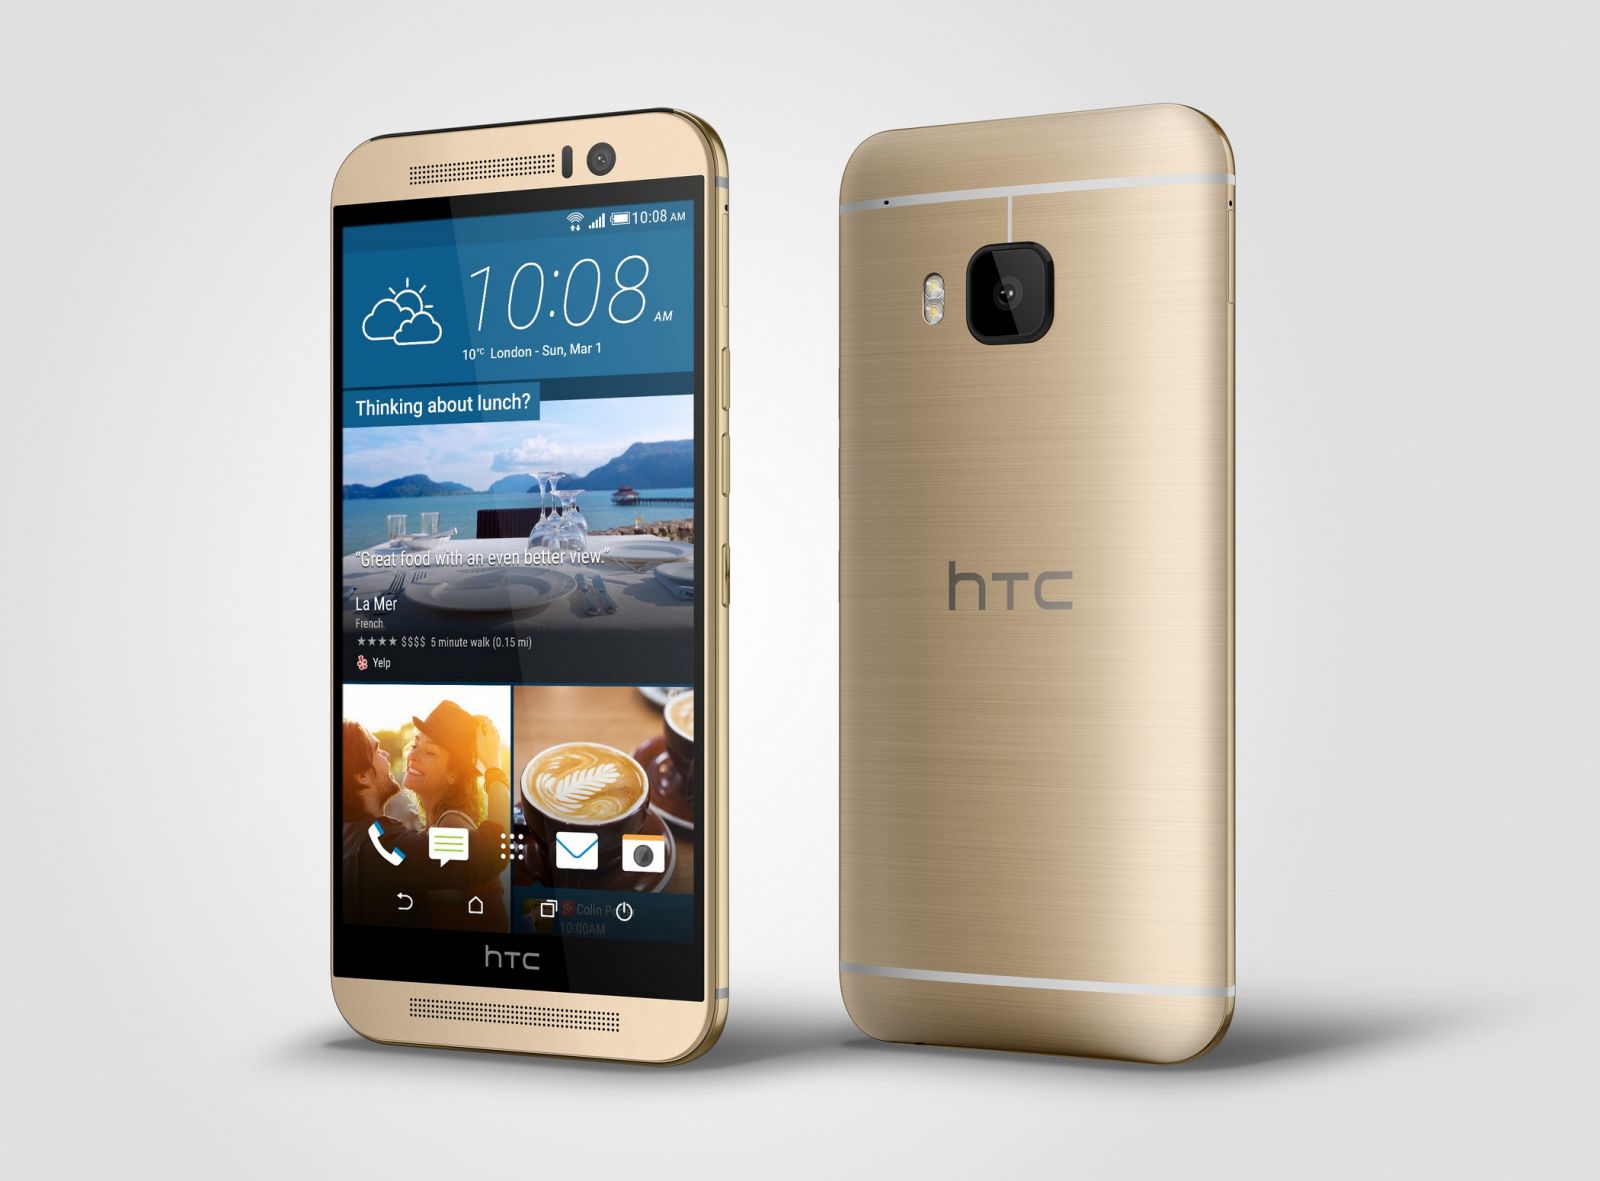 HTC เปิดตัว HTC One M9 สมาร์ทโฟนเรือธงรุ่นใหม่ กล้อง 20 ล้าน